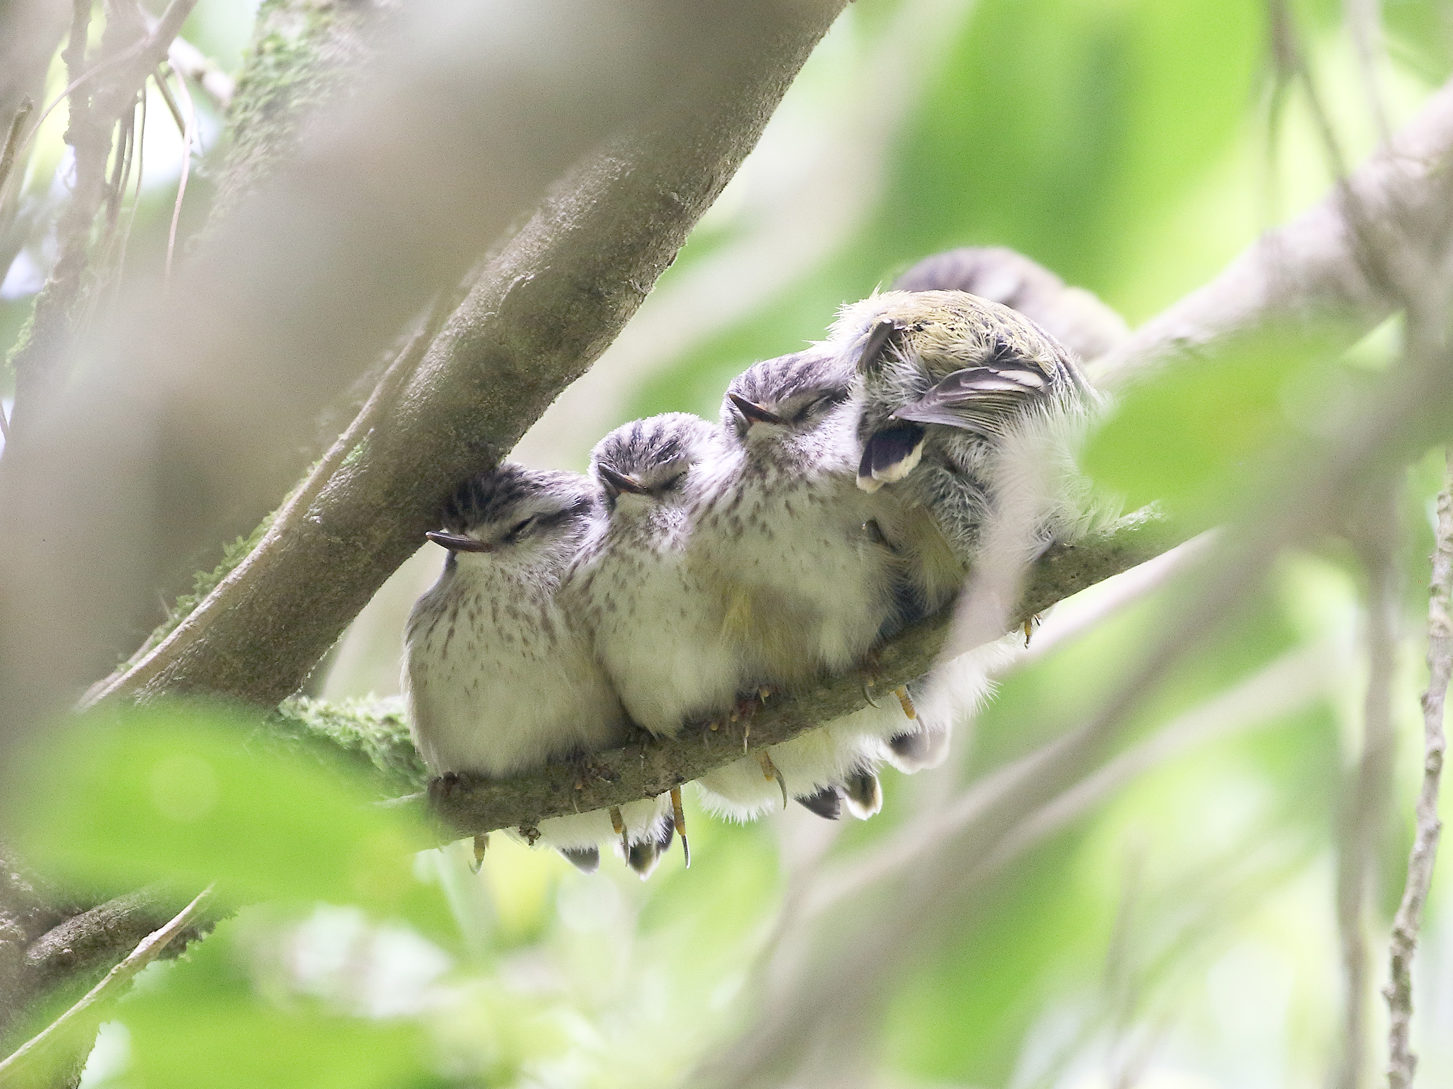 Five titipounamu chicks huddled together on a branch.